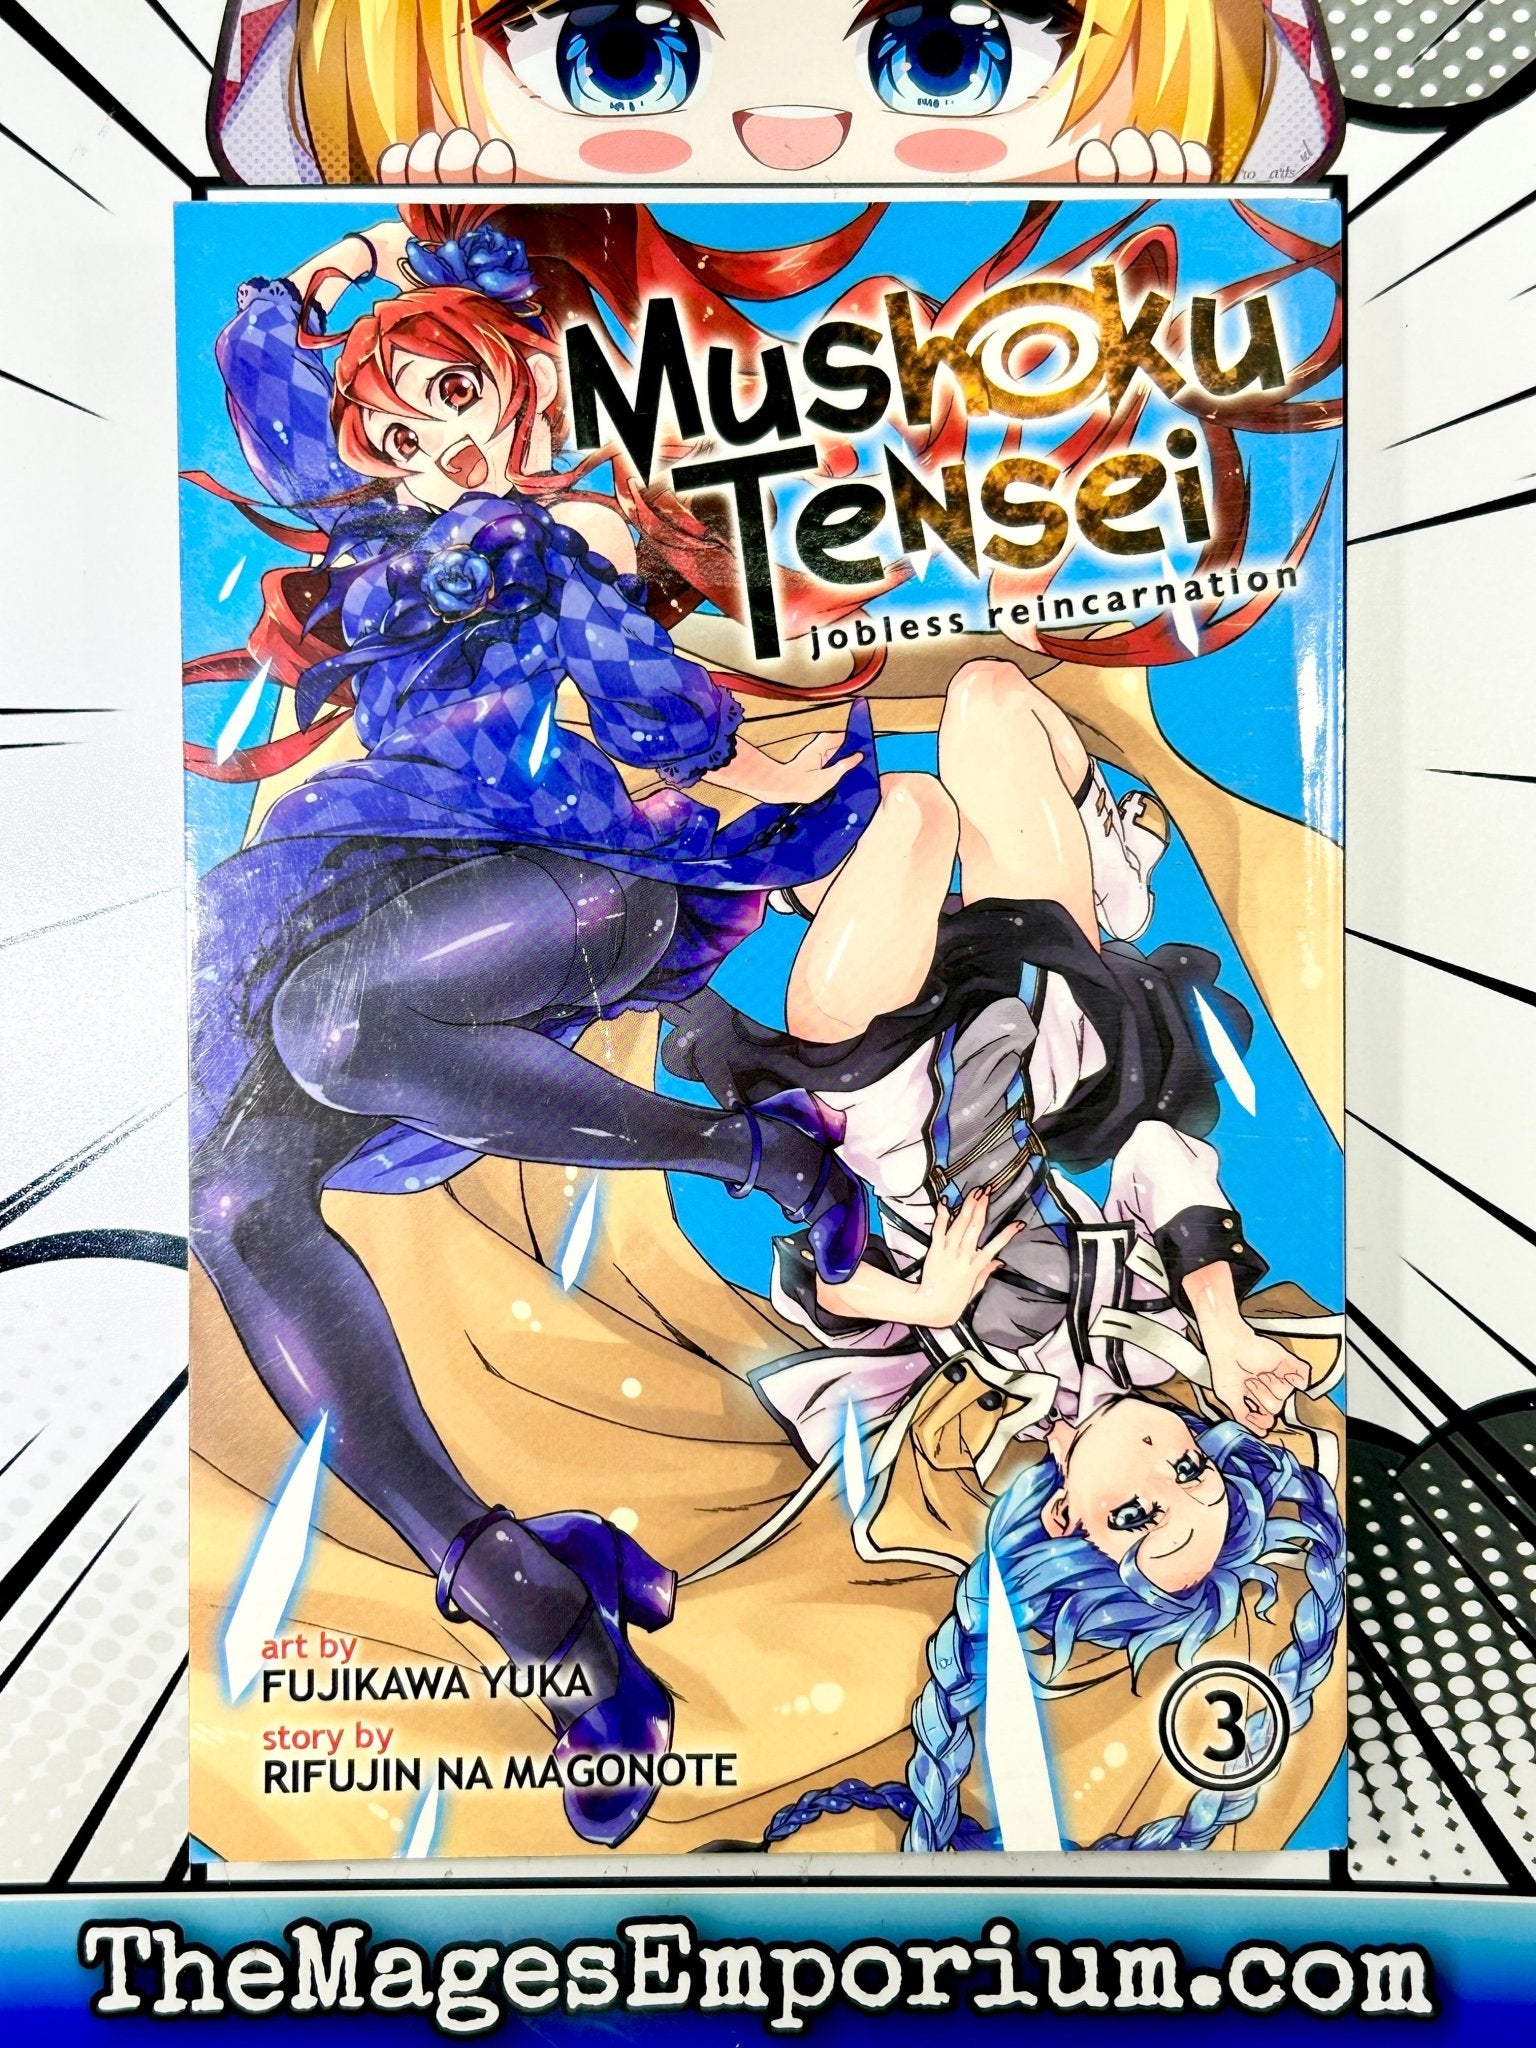 Mushoku Tensei: Uma Segunda Chance Vol. 8